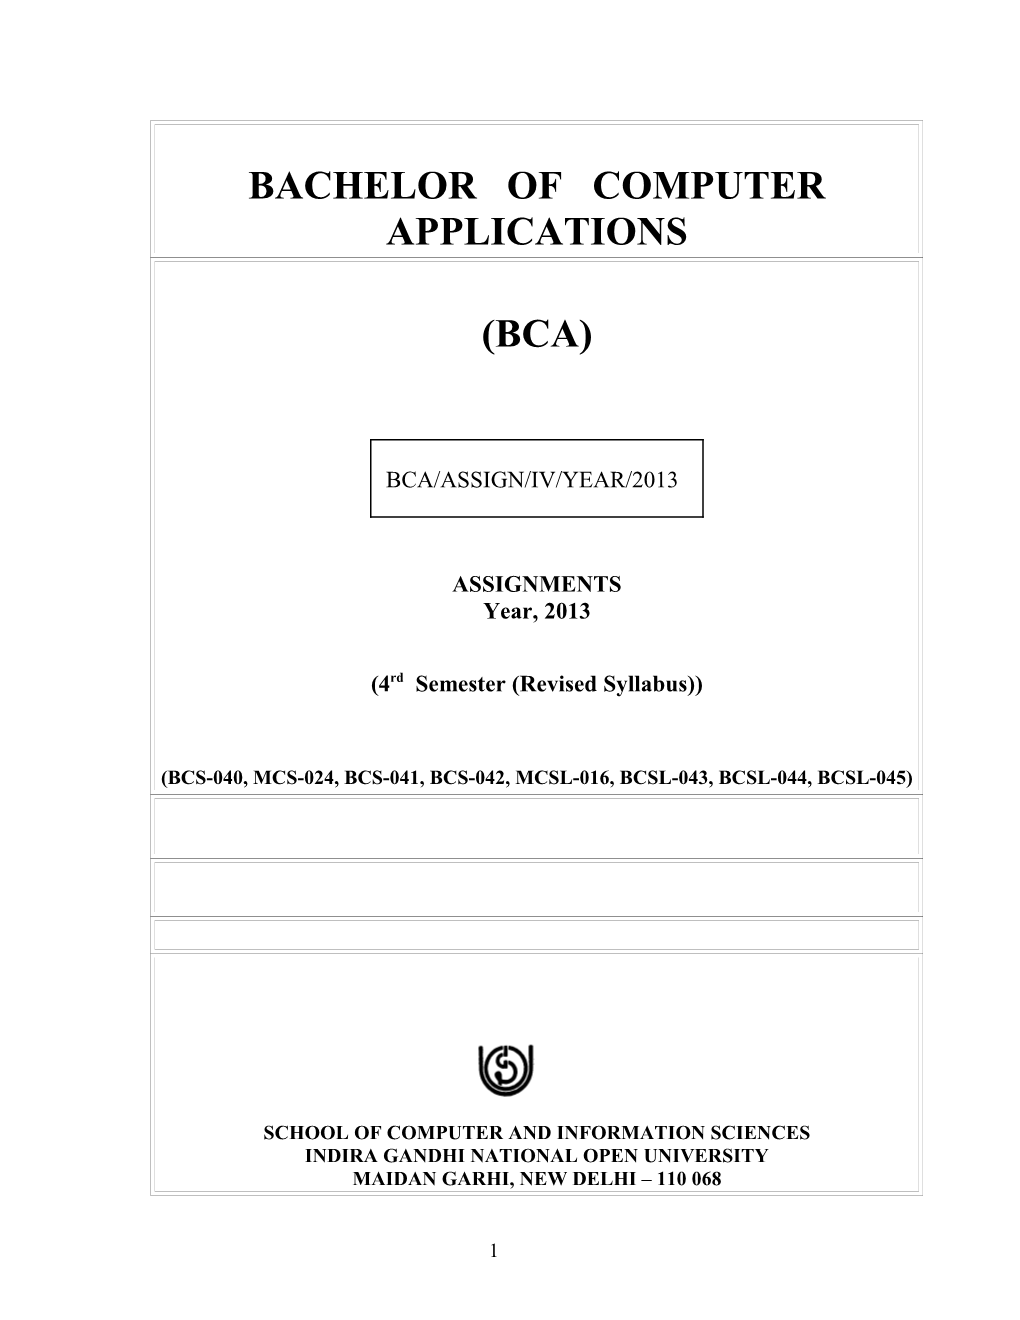 Bcs-040, Mcs-024, Bcs-041, Bcs-042,Mcsl-016, Bcsl-043, Bcsl-044, Bcsl-045